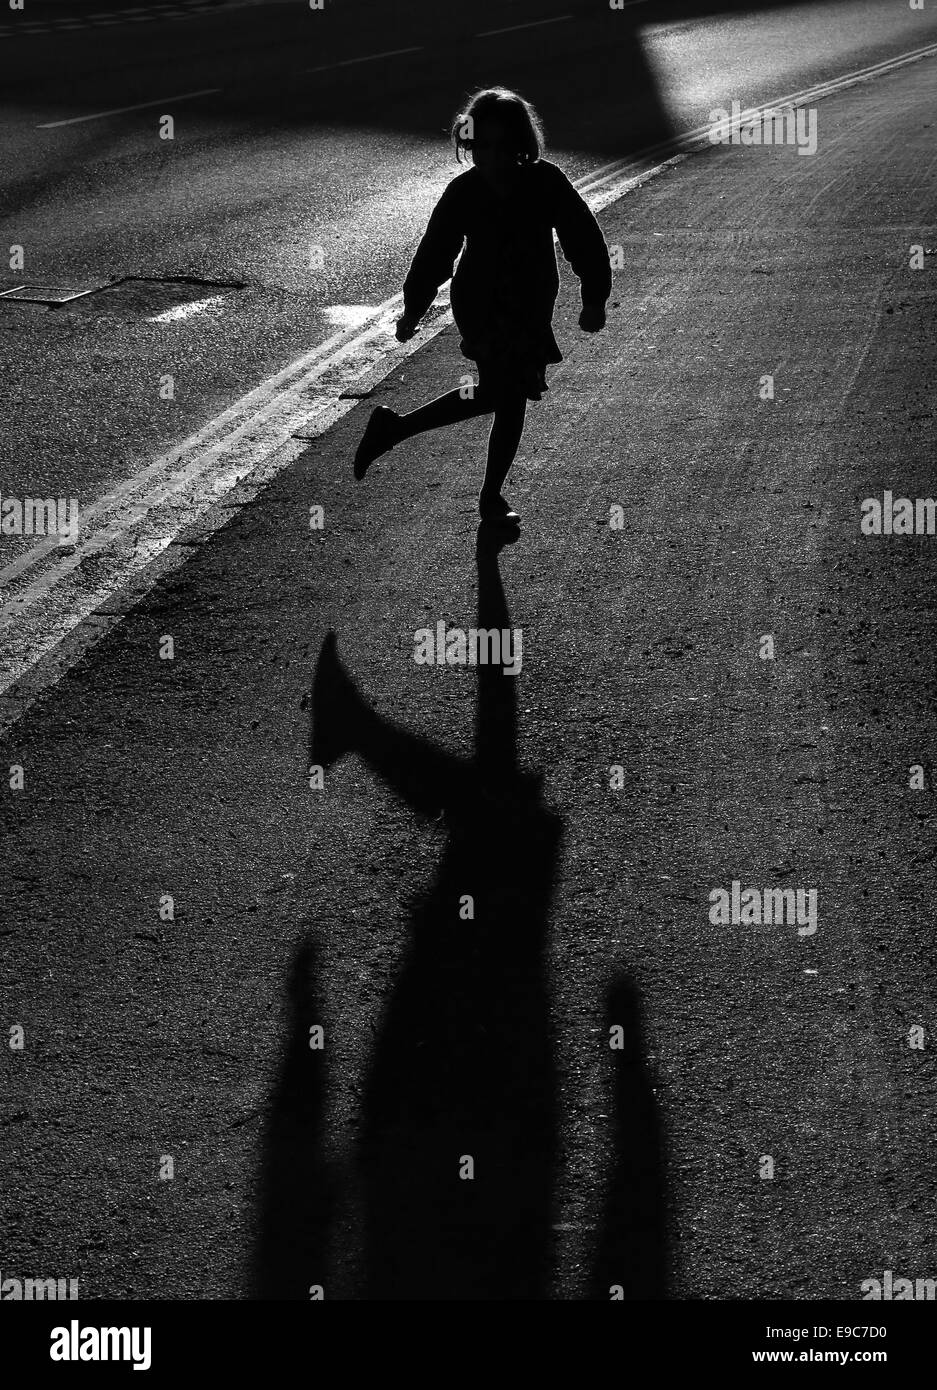 junge Mädchen am Straßenrand Silhouette durch auffallend helle niedrige Abendsonne auf einem Pflaster mit einem langen Schatten und Hintergrundbeleuchtung Haare tanzen Stockfoto